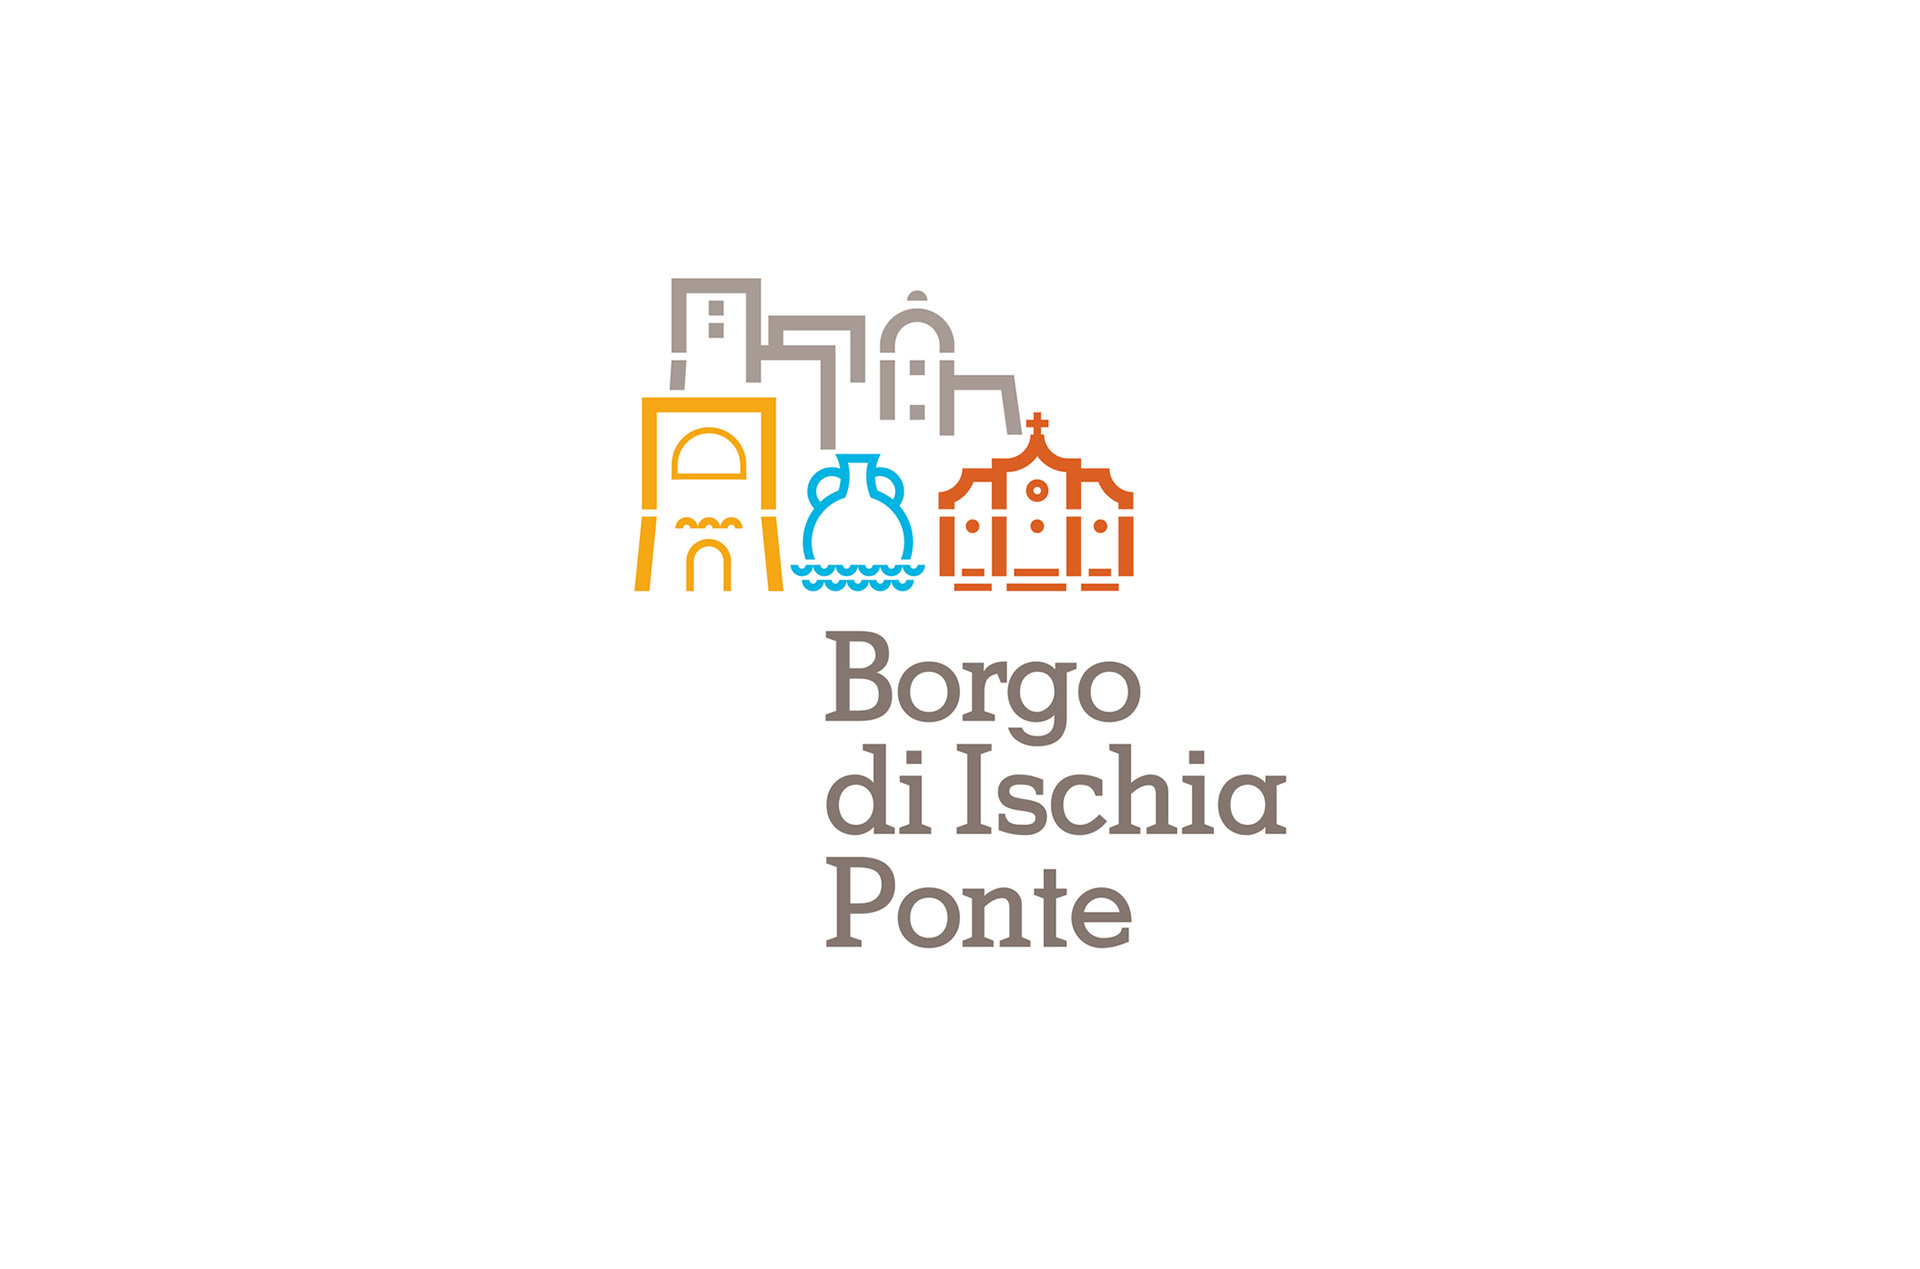 Borgo Ischia Ponte